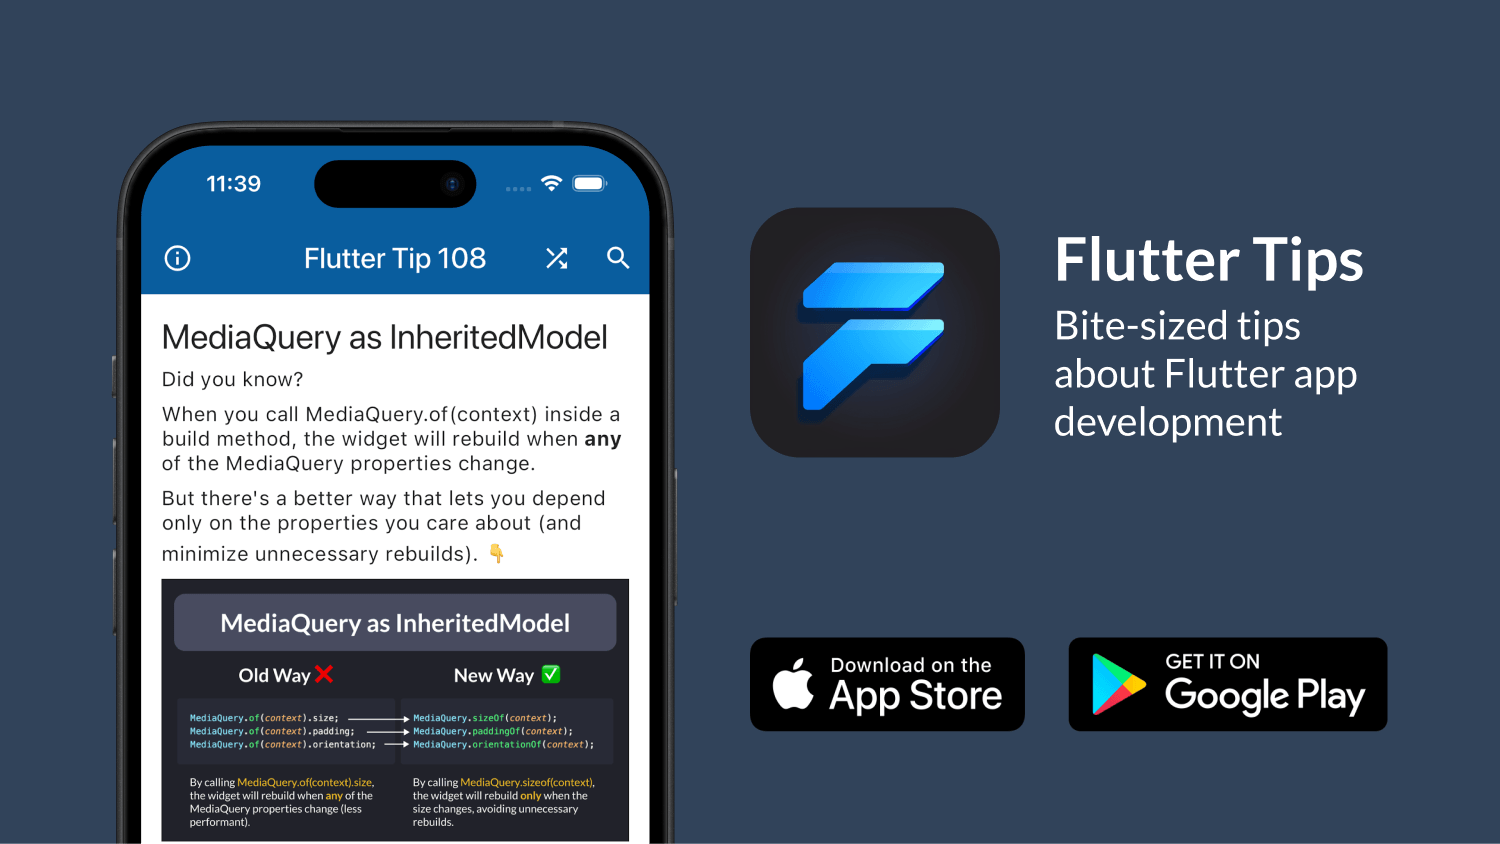 Download the Flutter Tips app